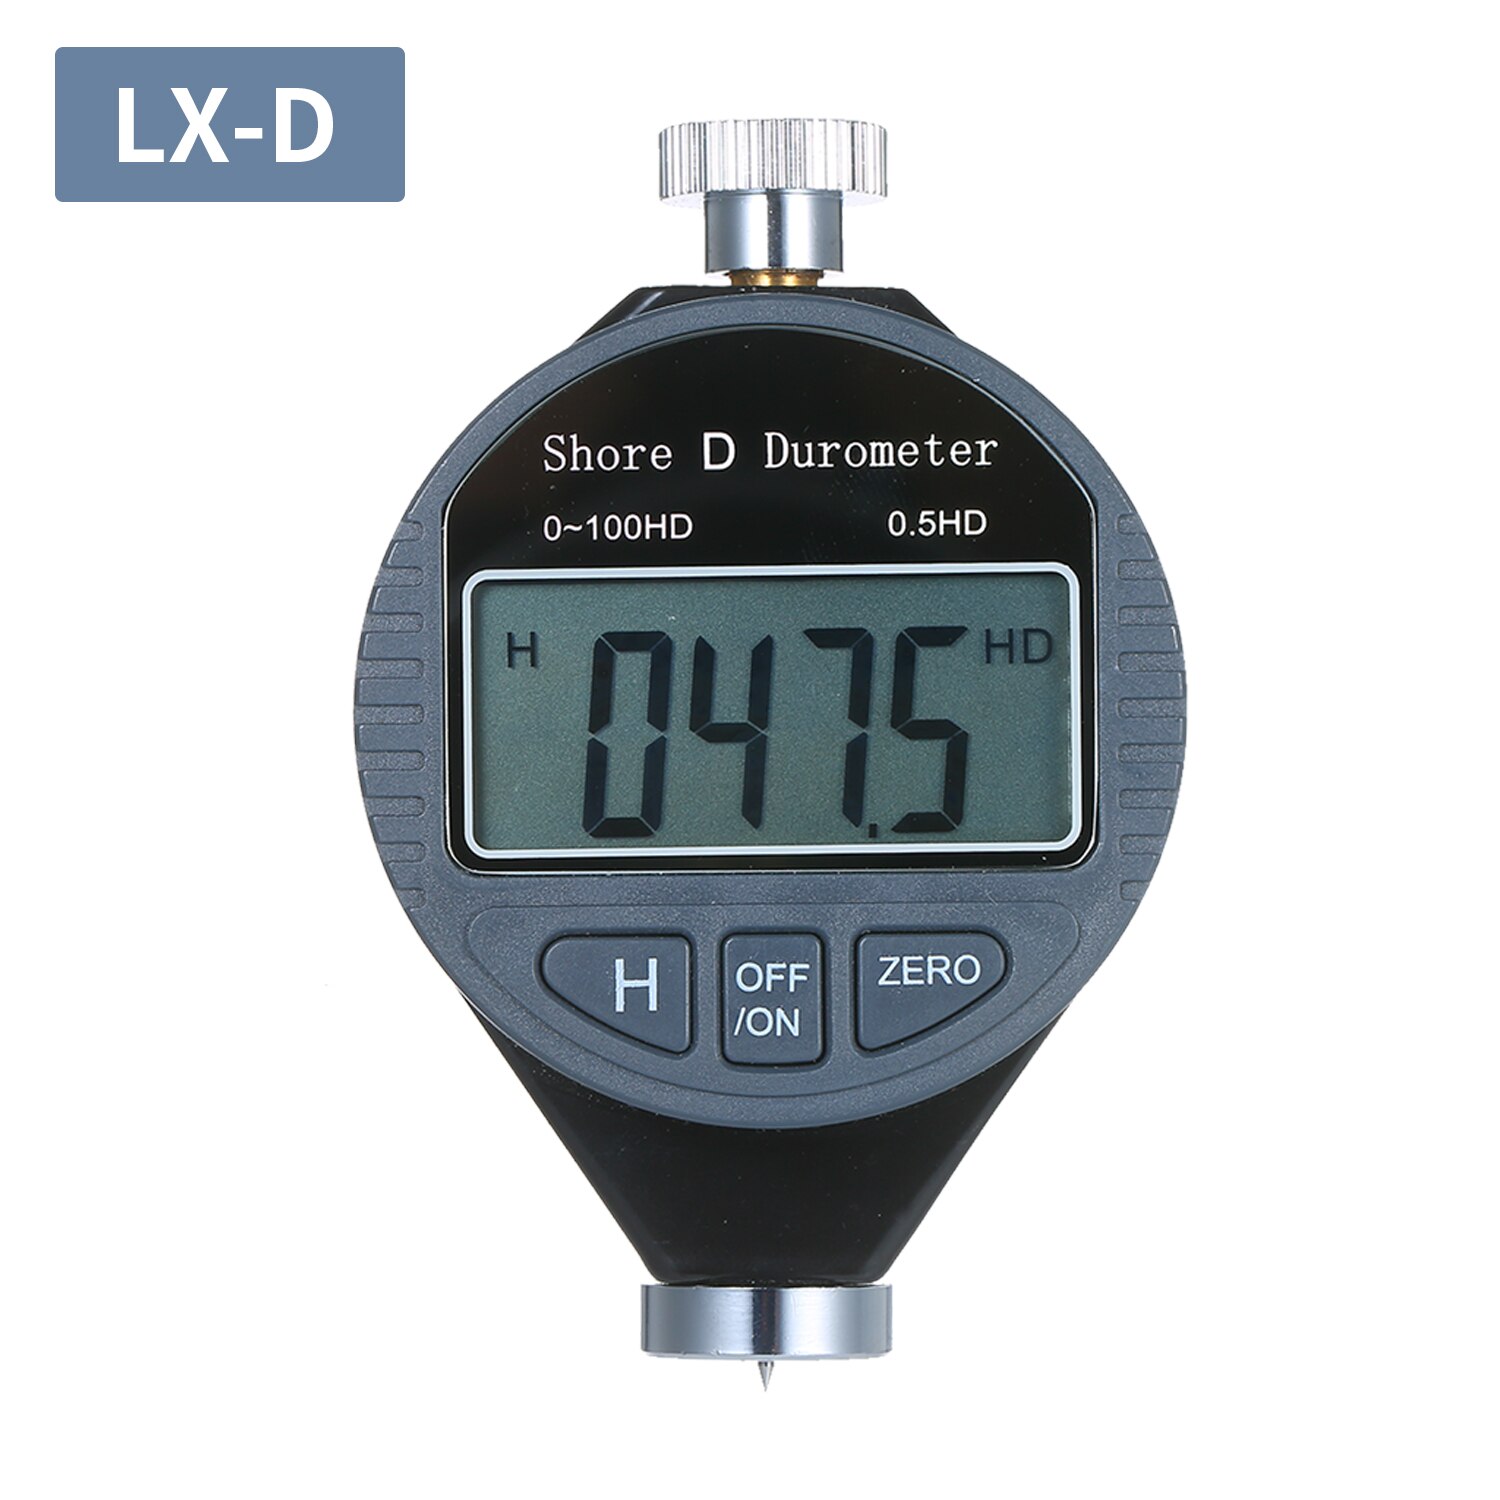 Digitalt durometer bærbart 0-100hd shore d hårdhedstester målerskala til gummidæk plastgulv med stort lcd-display